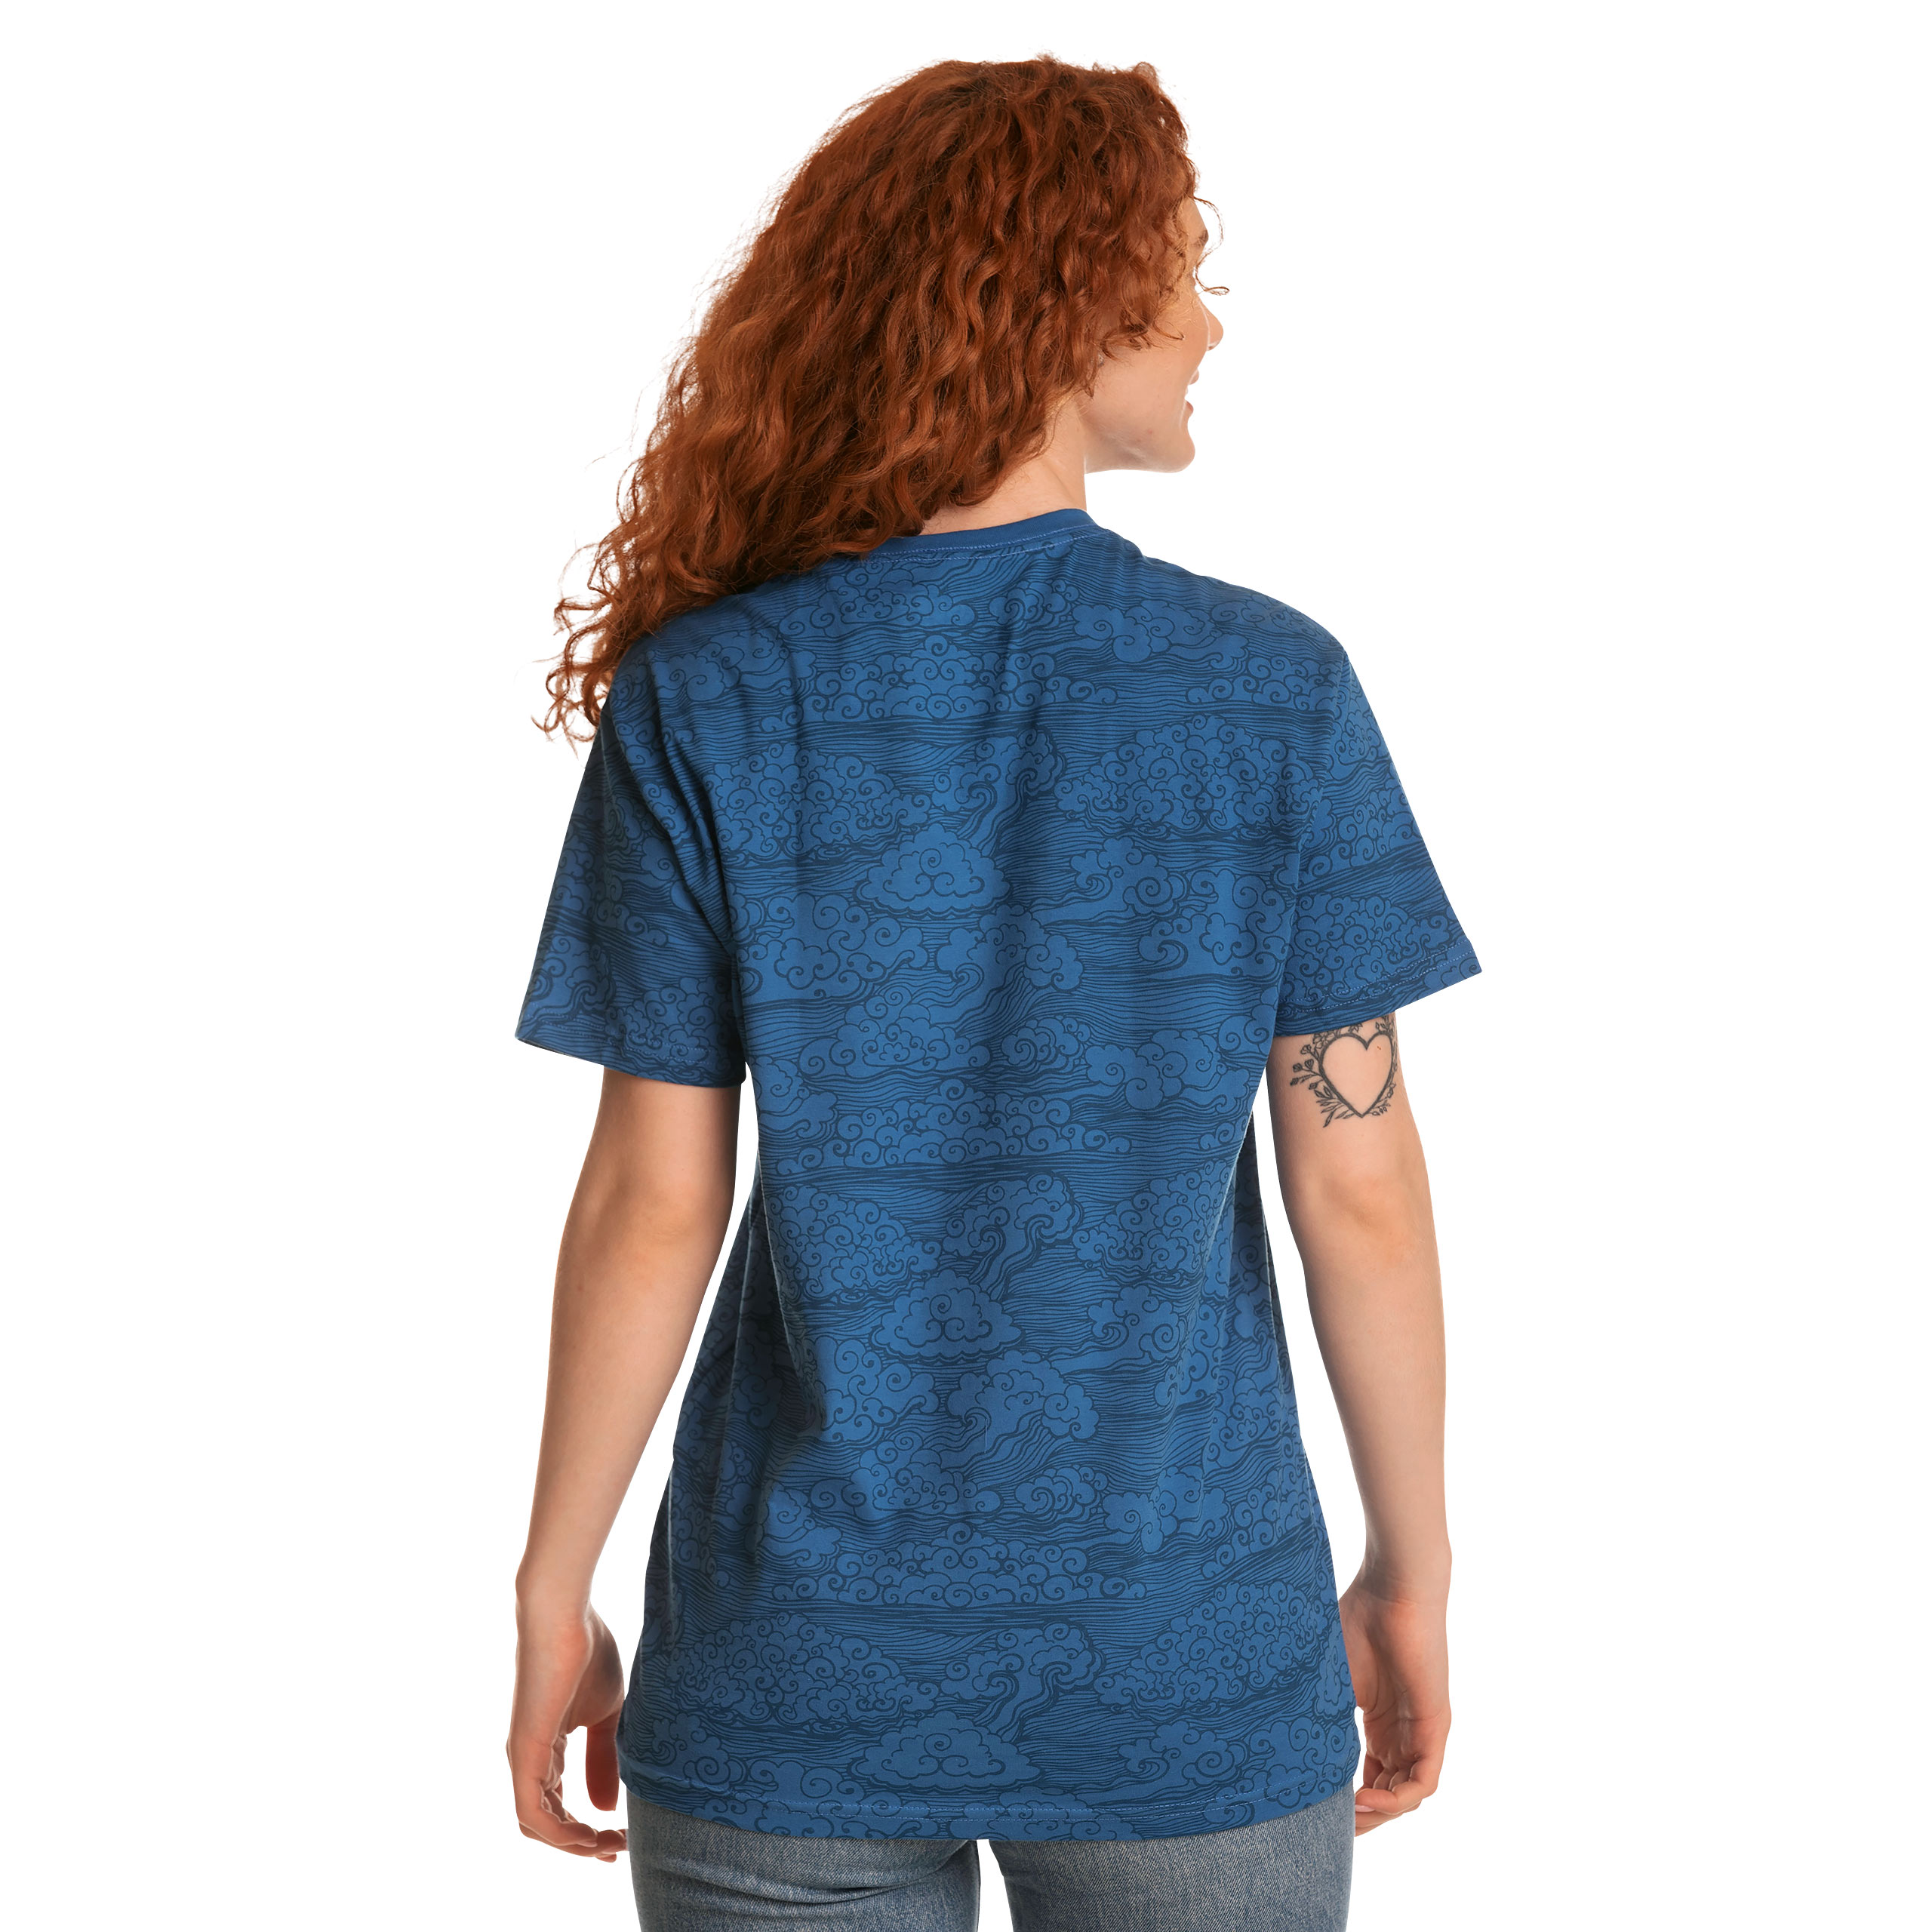 League of Legends - Logo T-Shirt Blauw